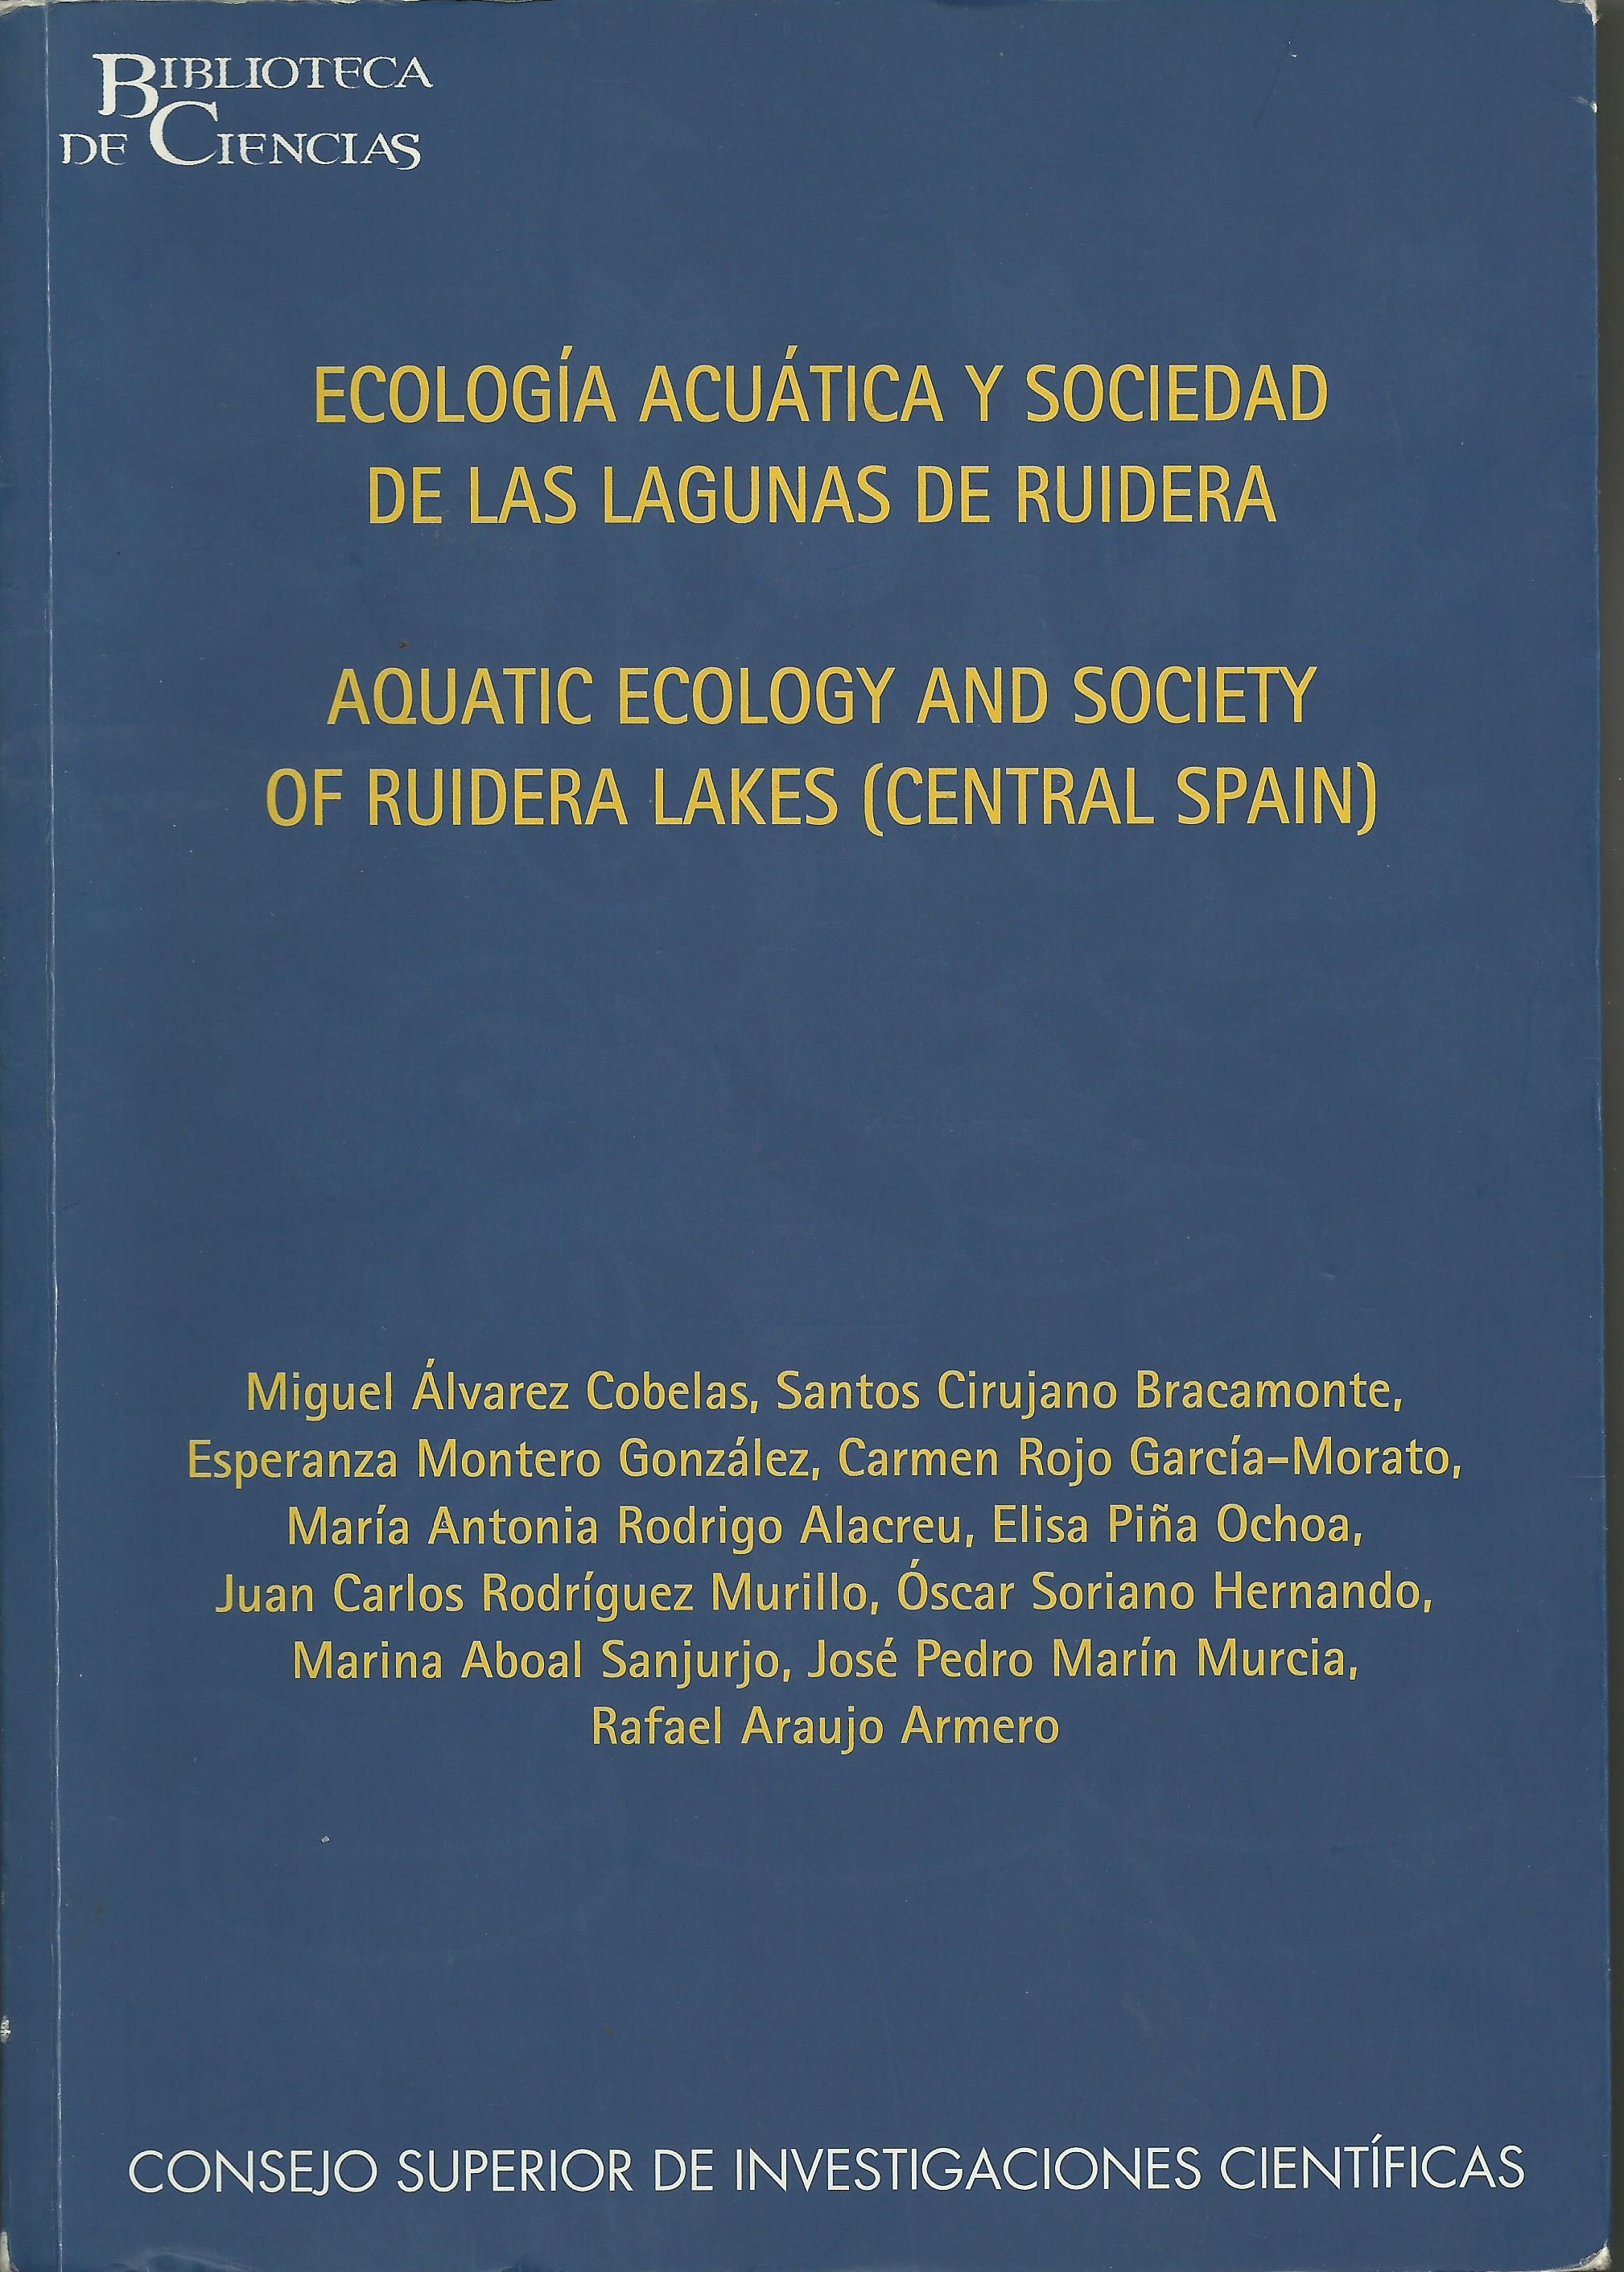 Imagen de portada del libro Ecología acuática y sociedad de las lagunas de Ruidera